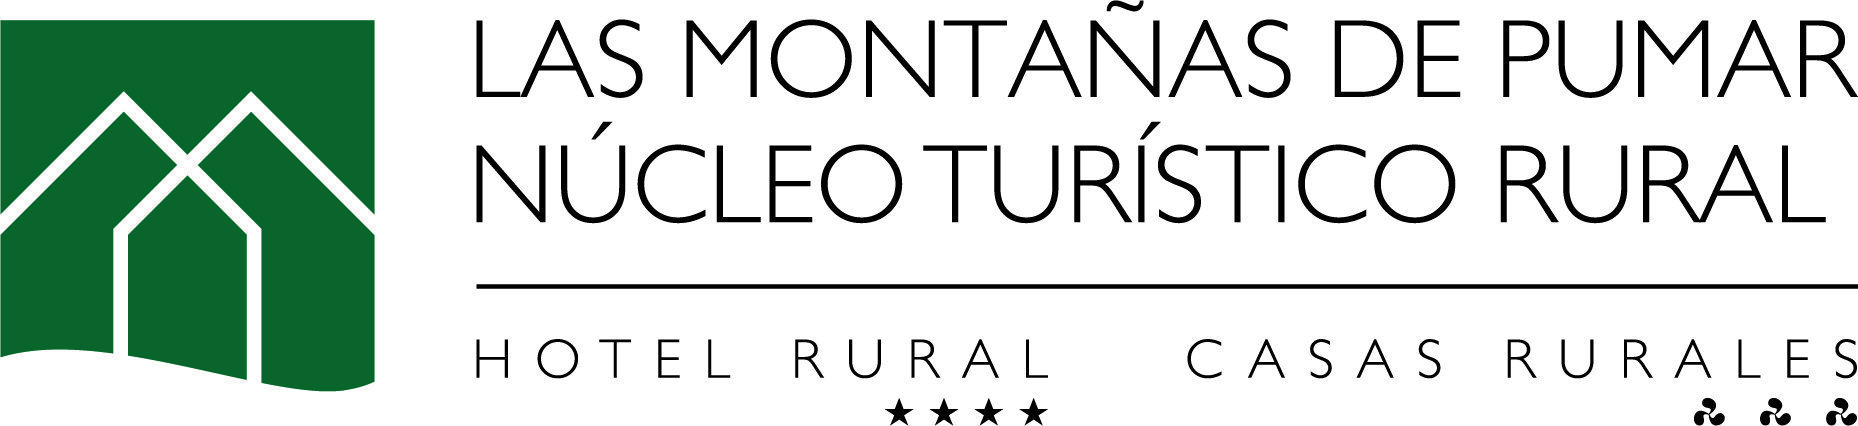 Hotel Rural Las Montañas de Pumar - Sumérgete naturaleza